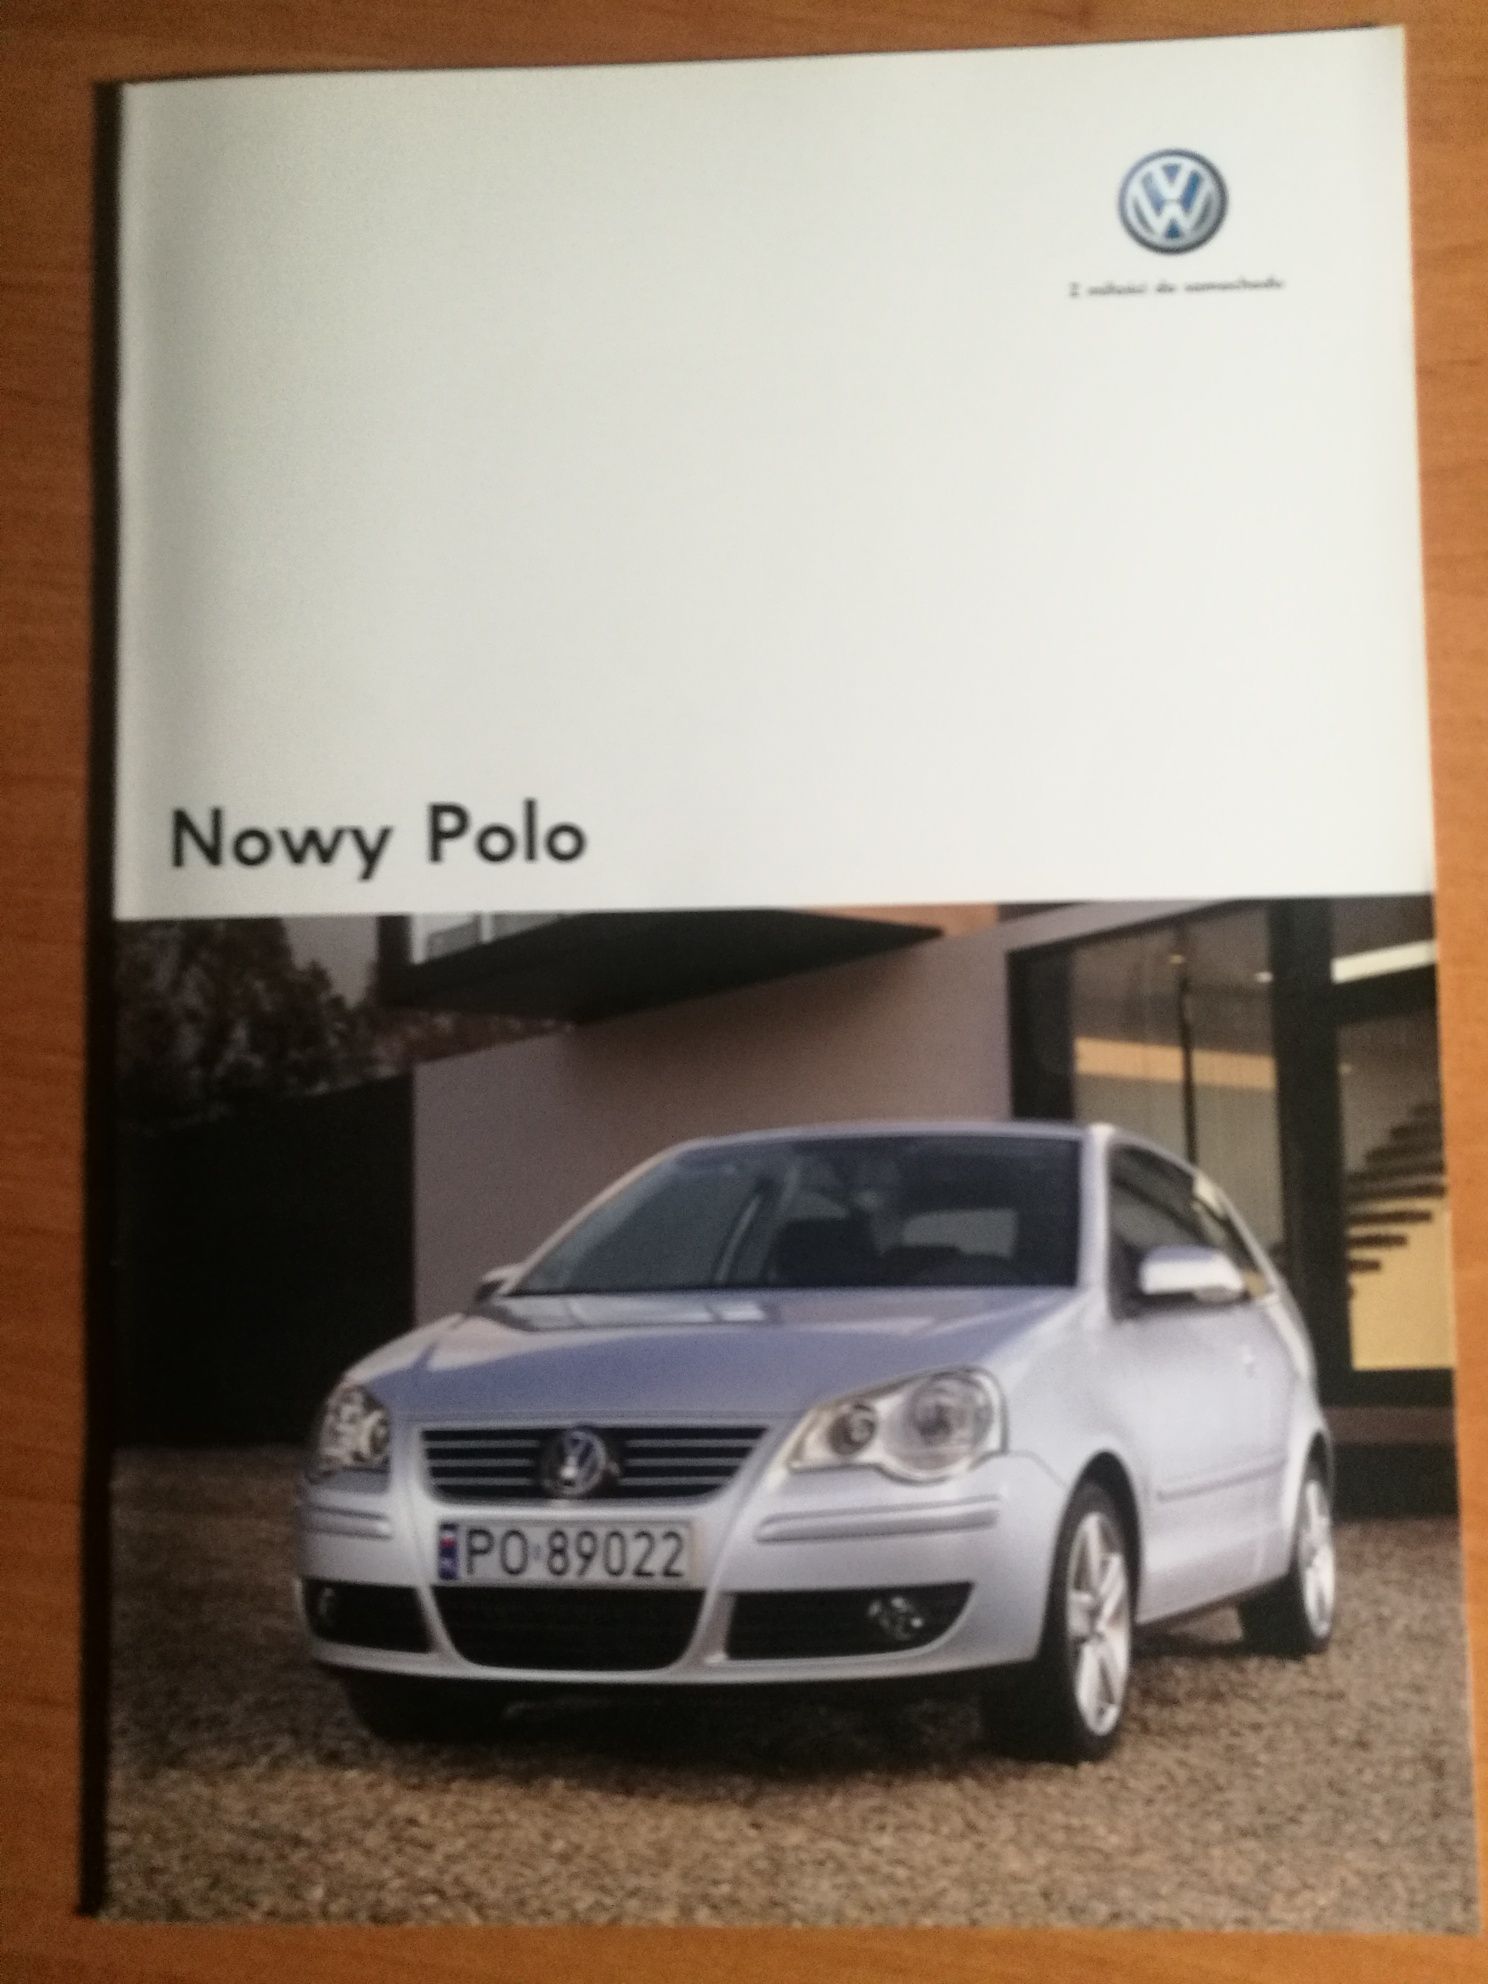 Prospekt VW Polo 2005 szt.2 polska edycja